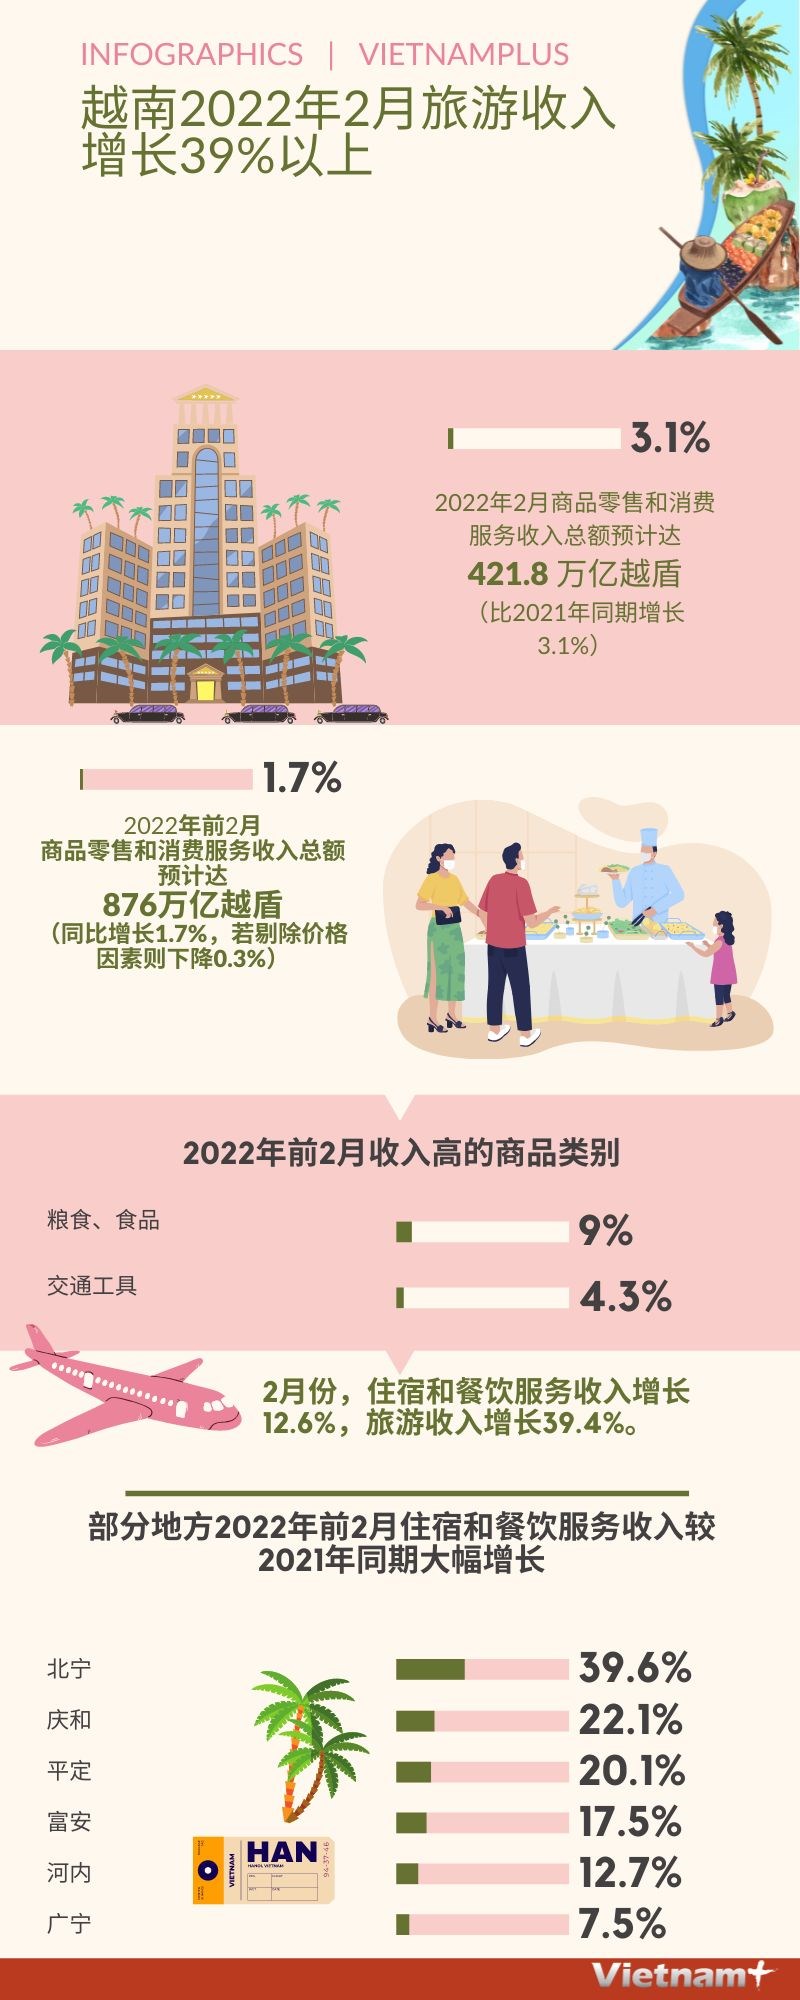 图表新闻：越南2022年2月旅游收入增长39%以上 hinh anh 1